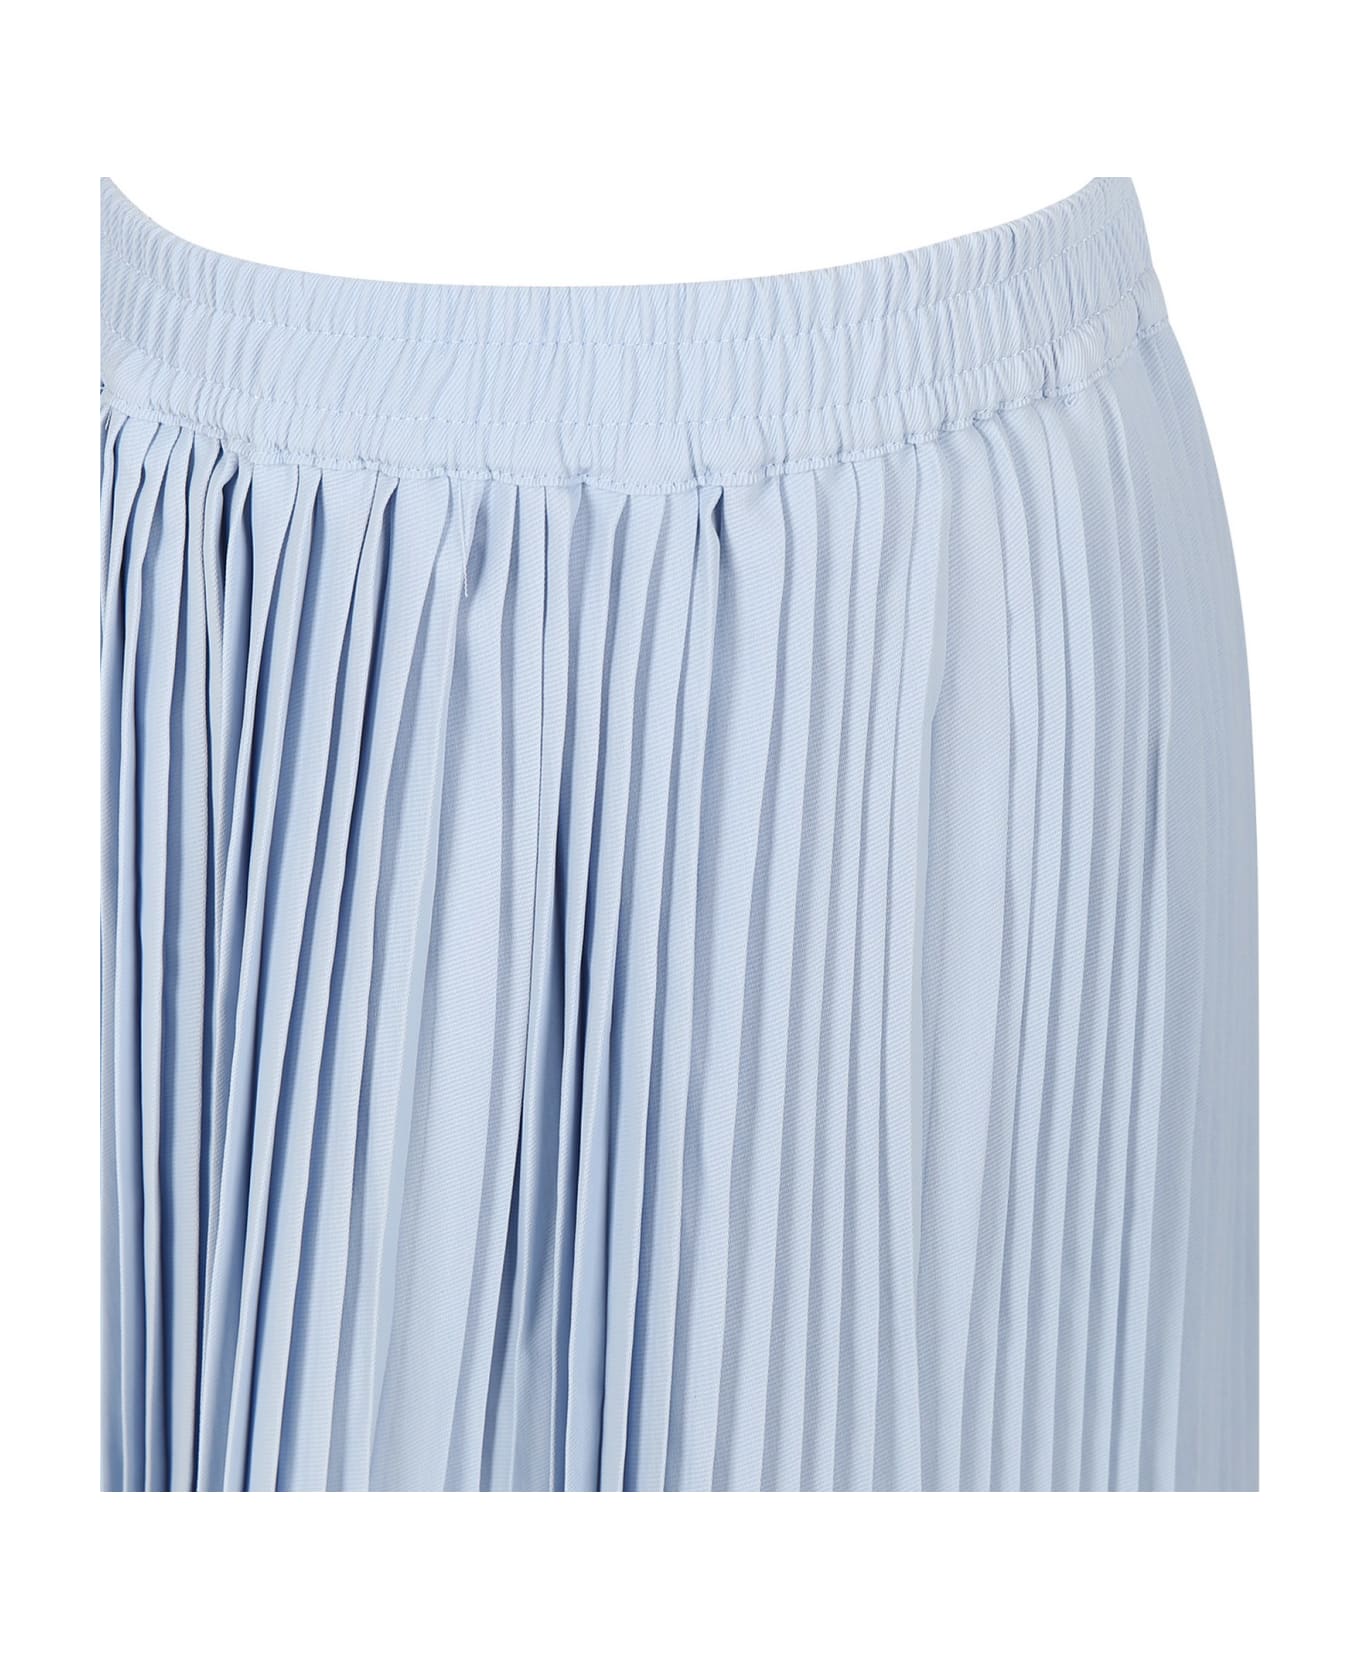 Molo Light Blue Casual Skirt Backa For Girl - Light Blue